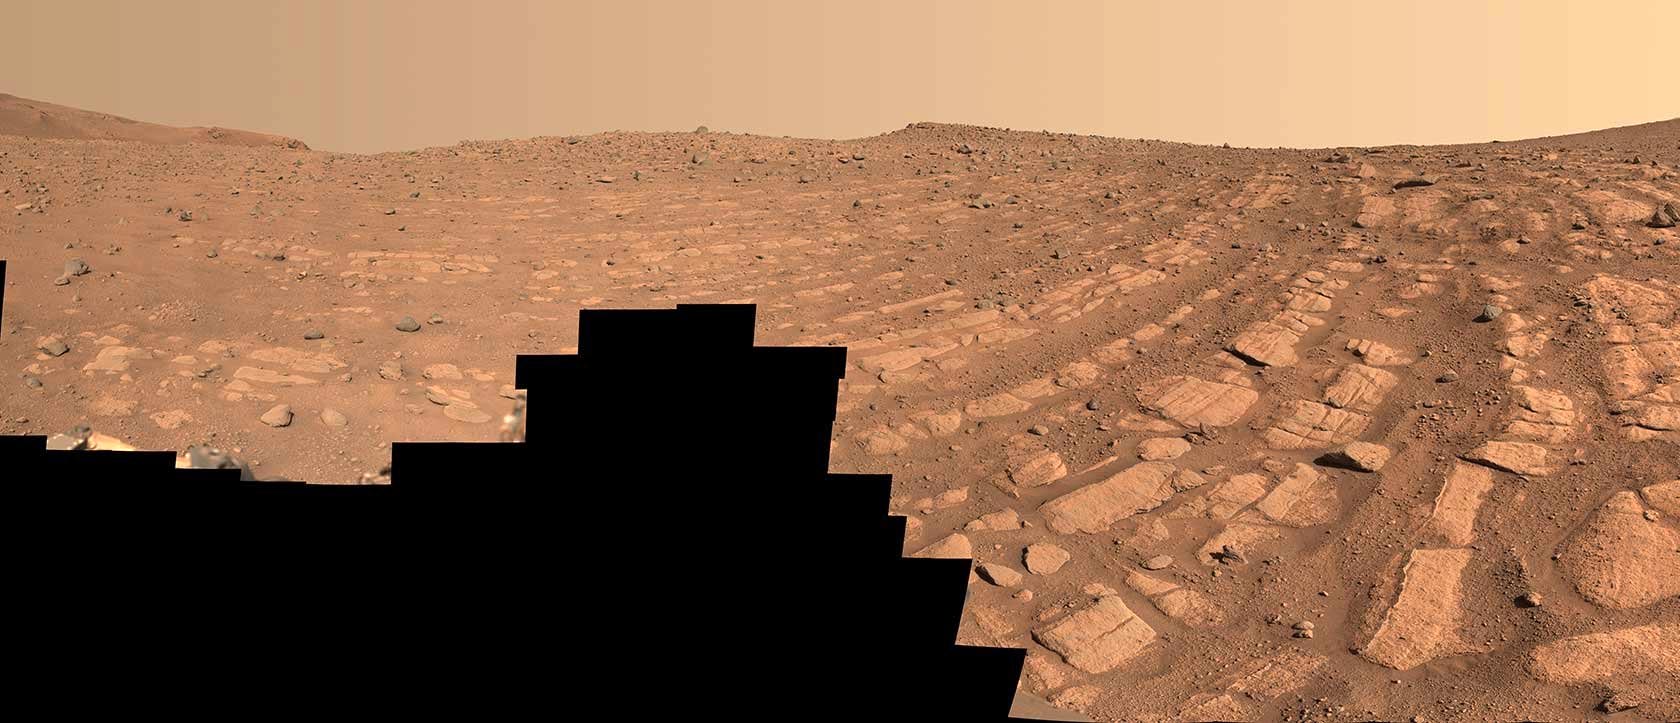 Un poderoso río marciano.  El último descubrimiento asombroso del Perseverance Mars Rover de la NASA